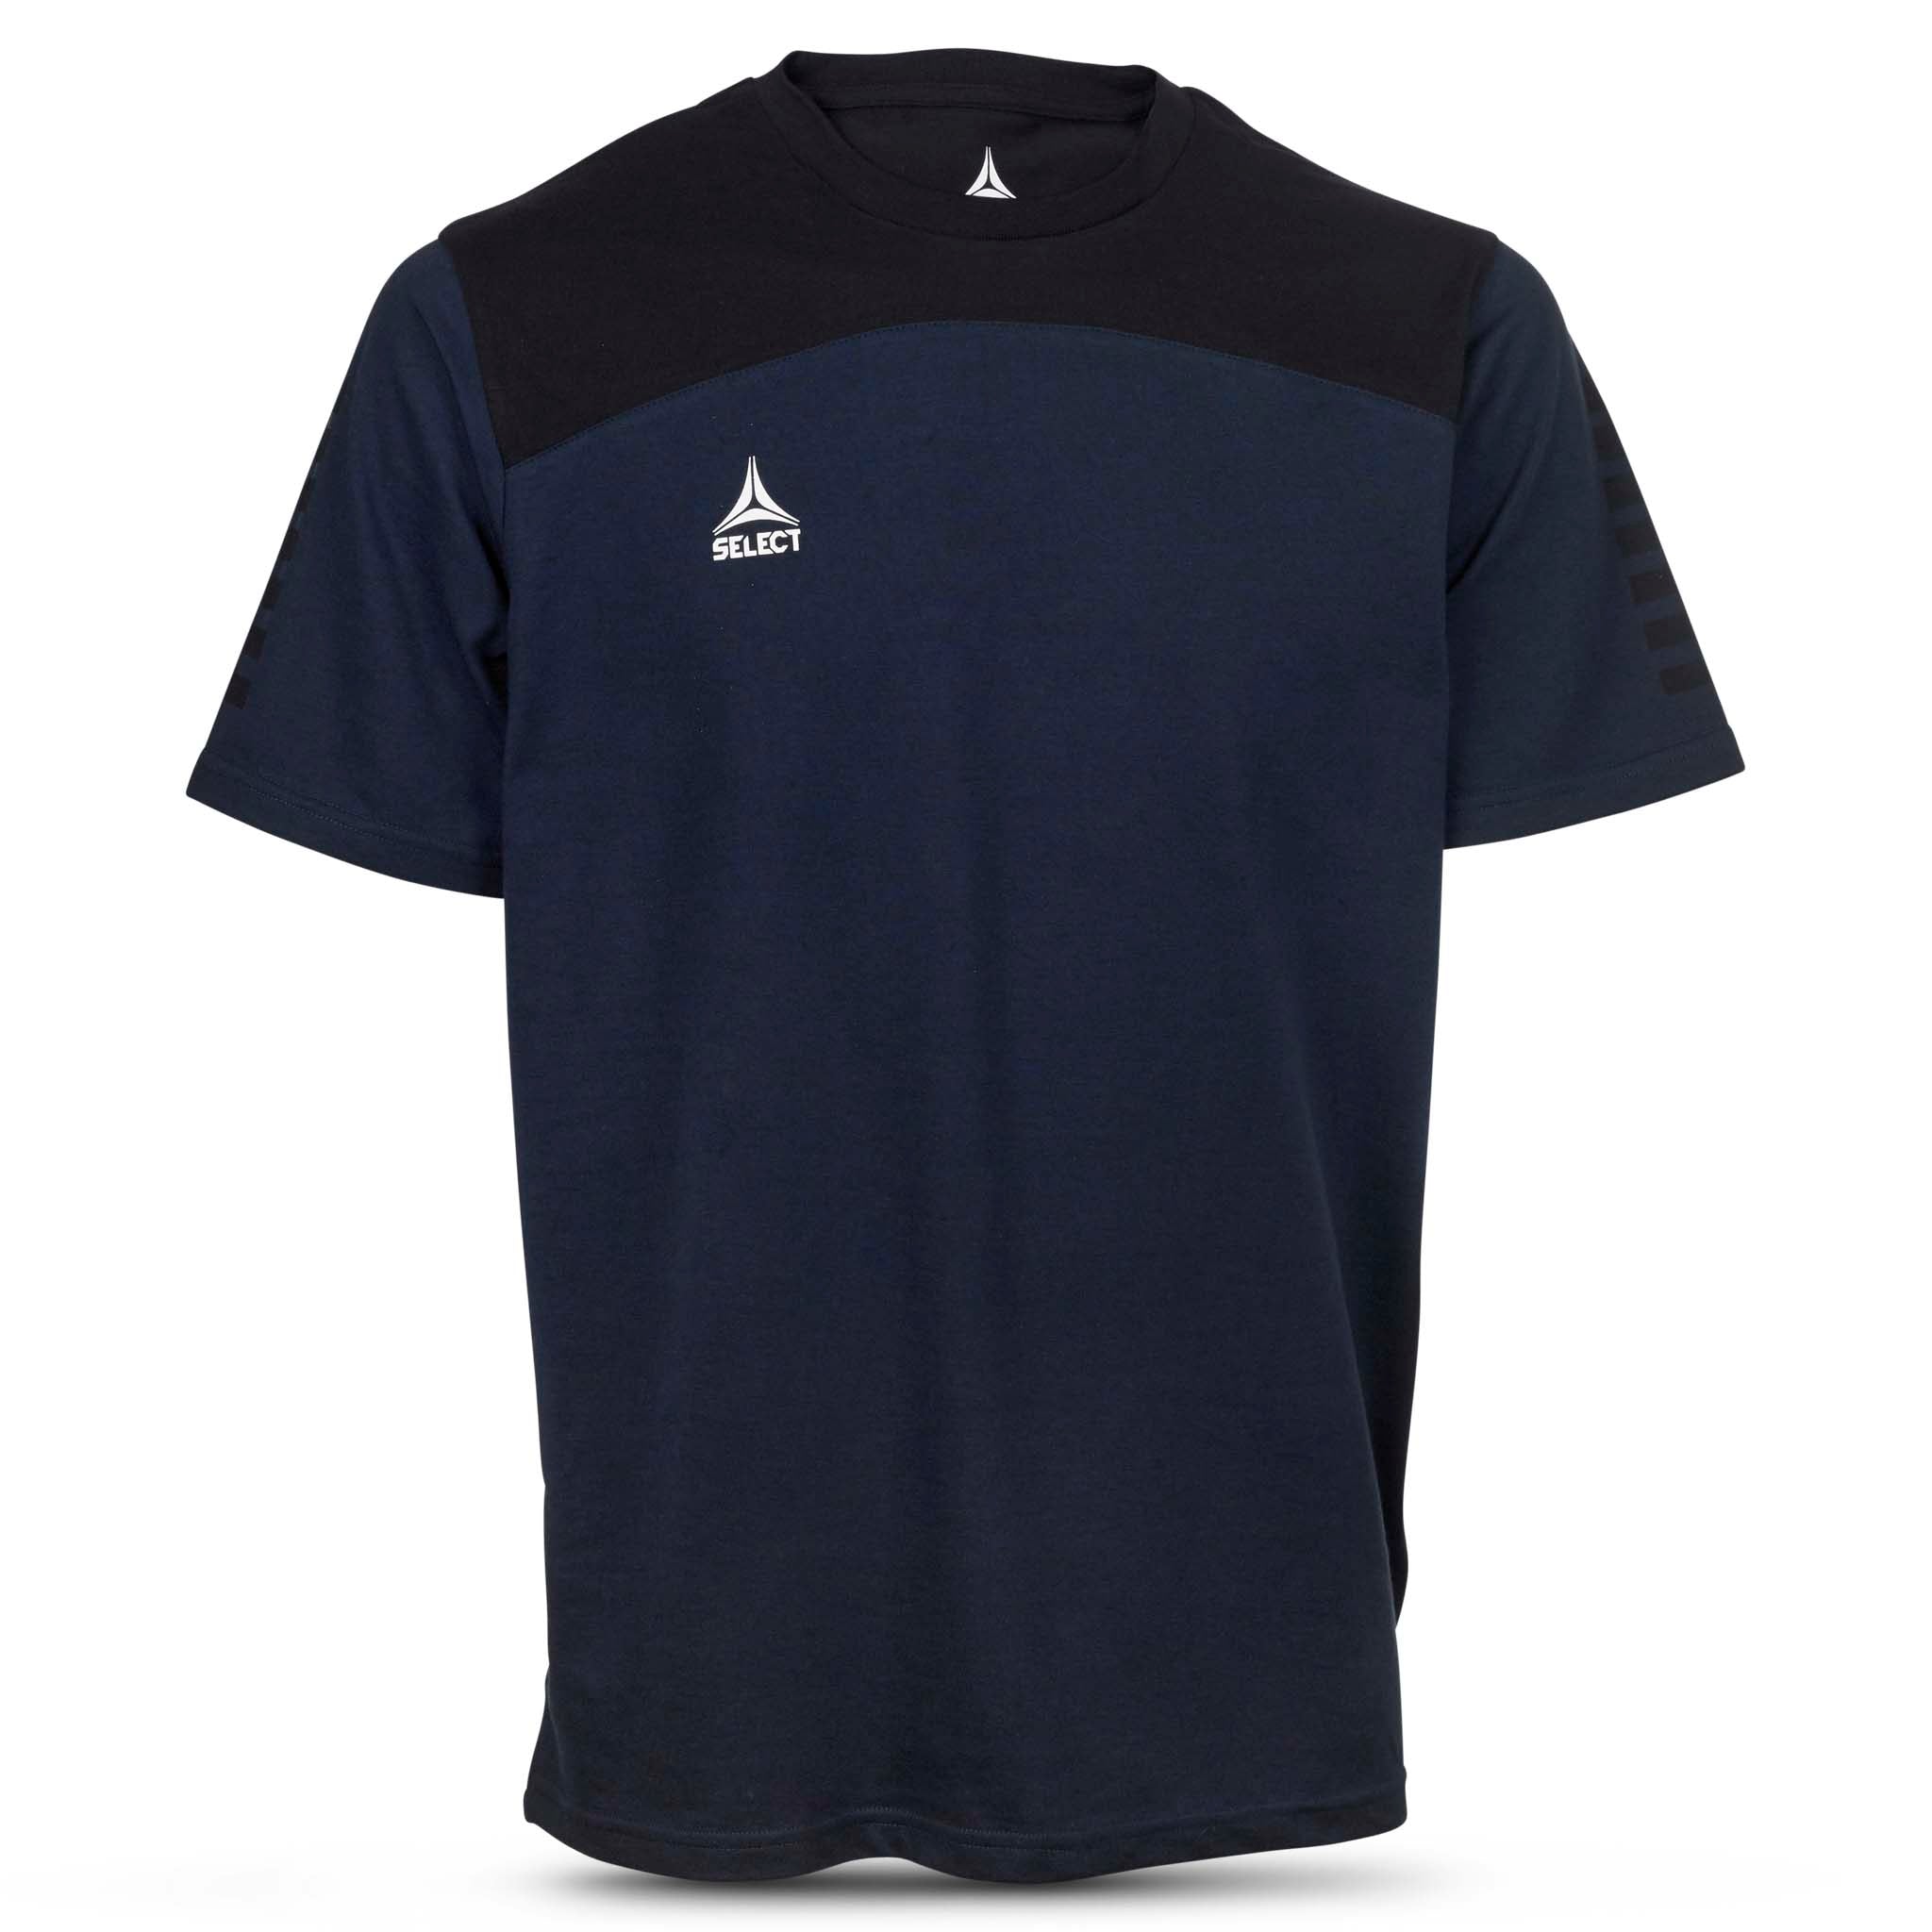 Oxford T-shirt #färg_navy/svart